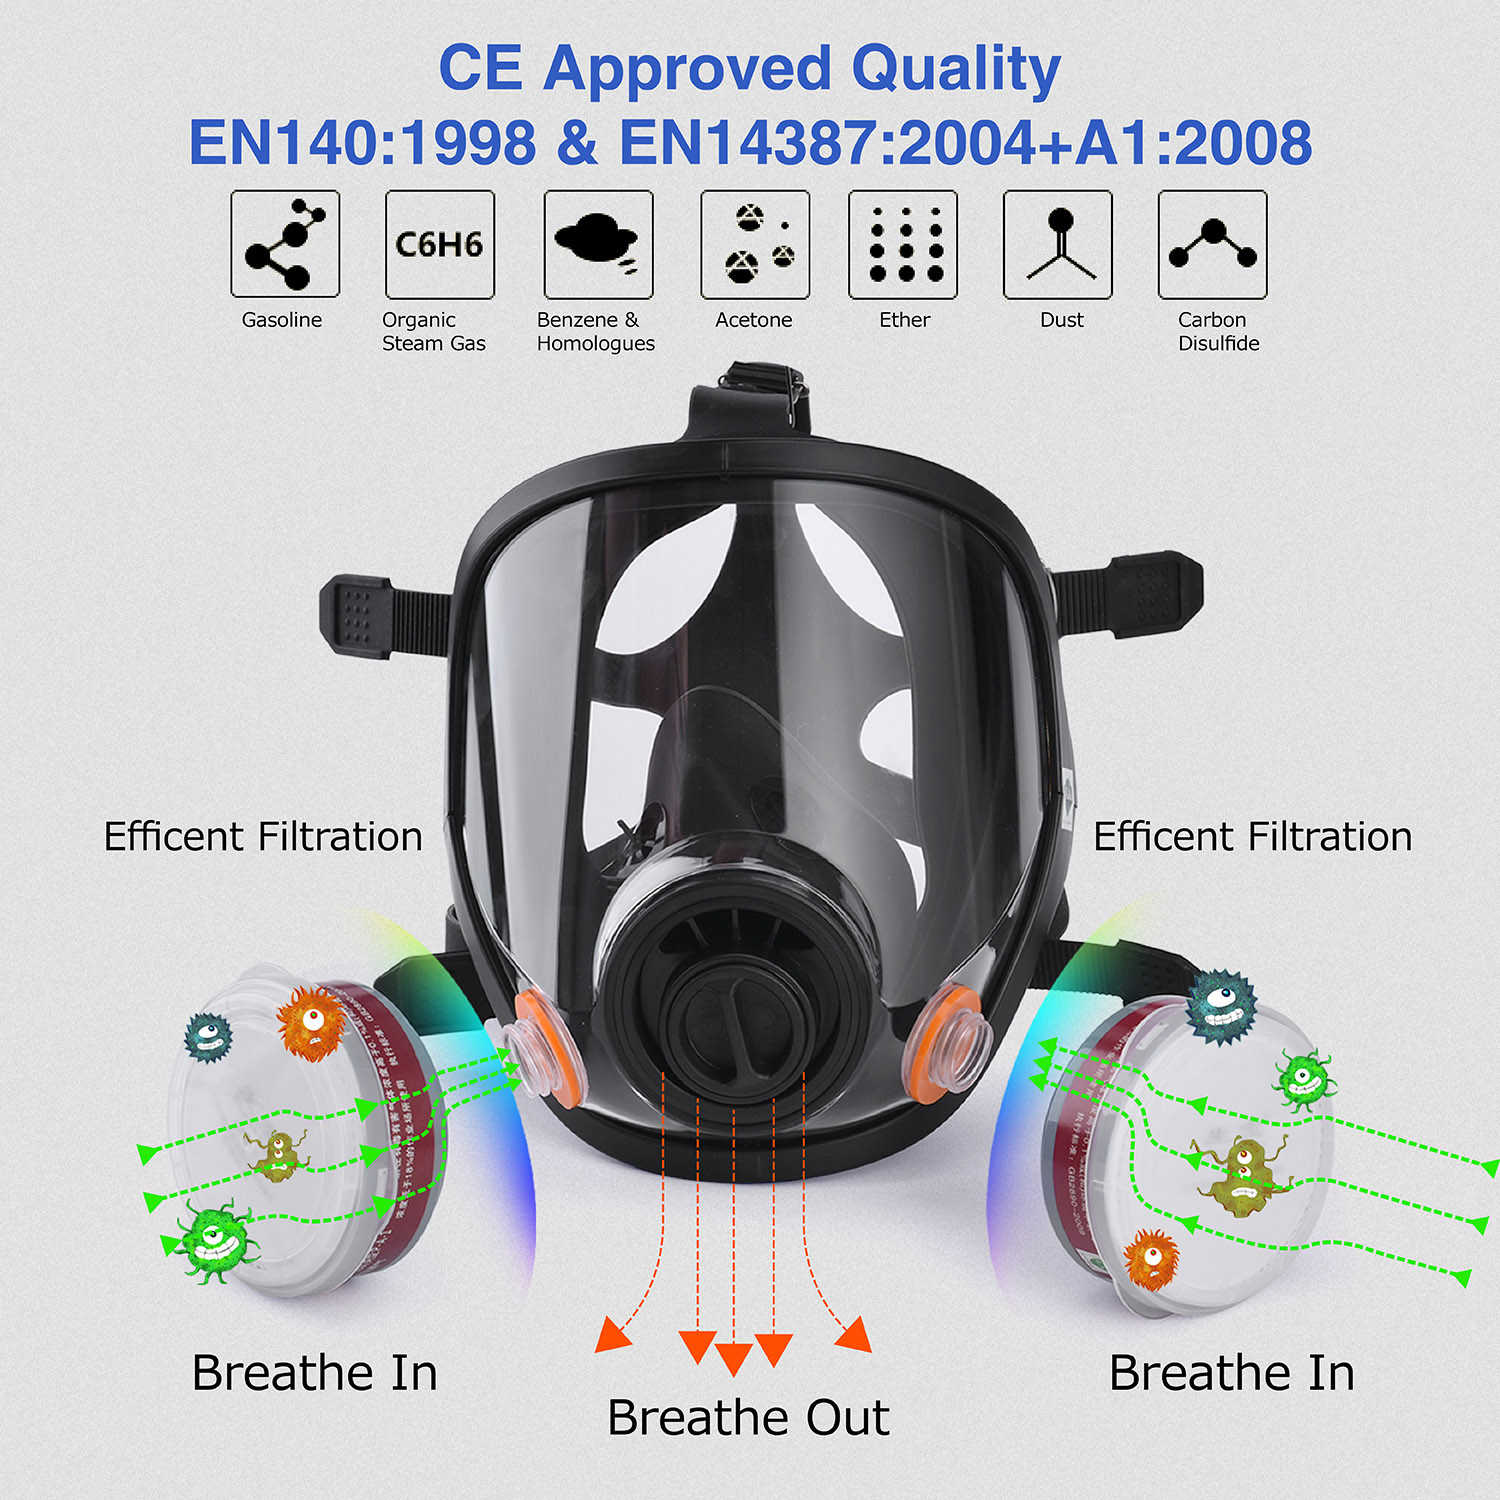 Respiratore resistente agli agenti chimici con filtri GM8000